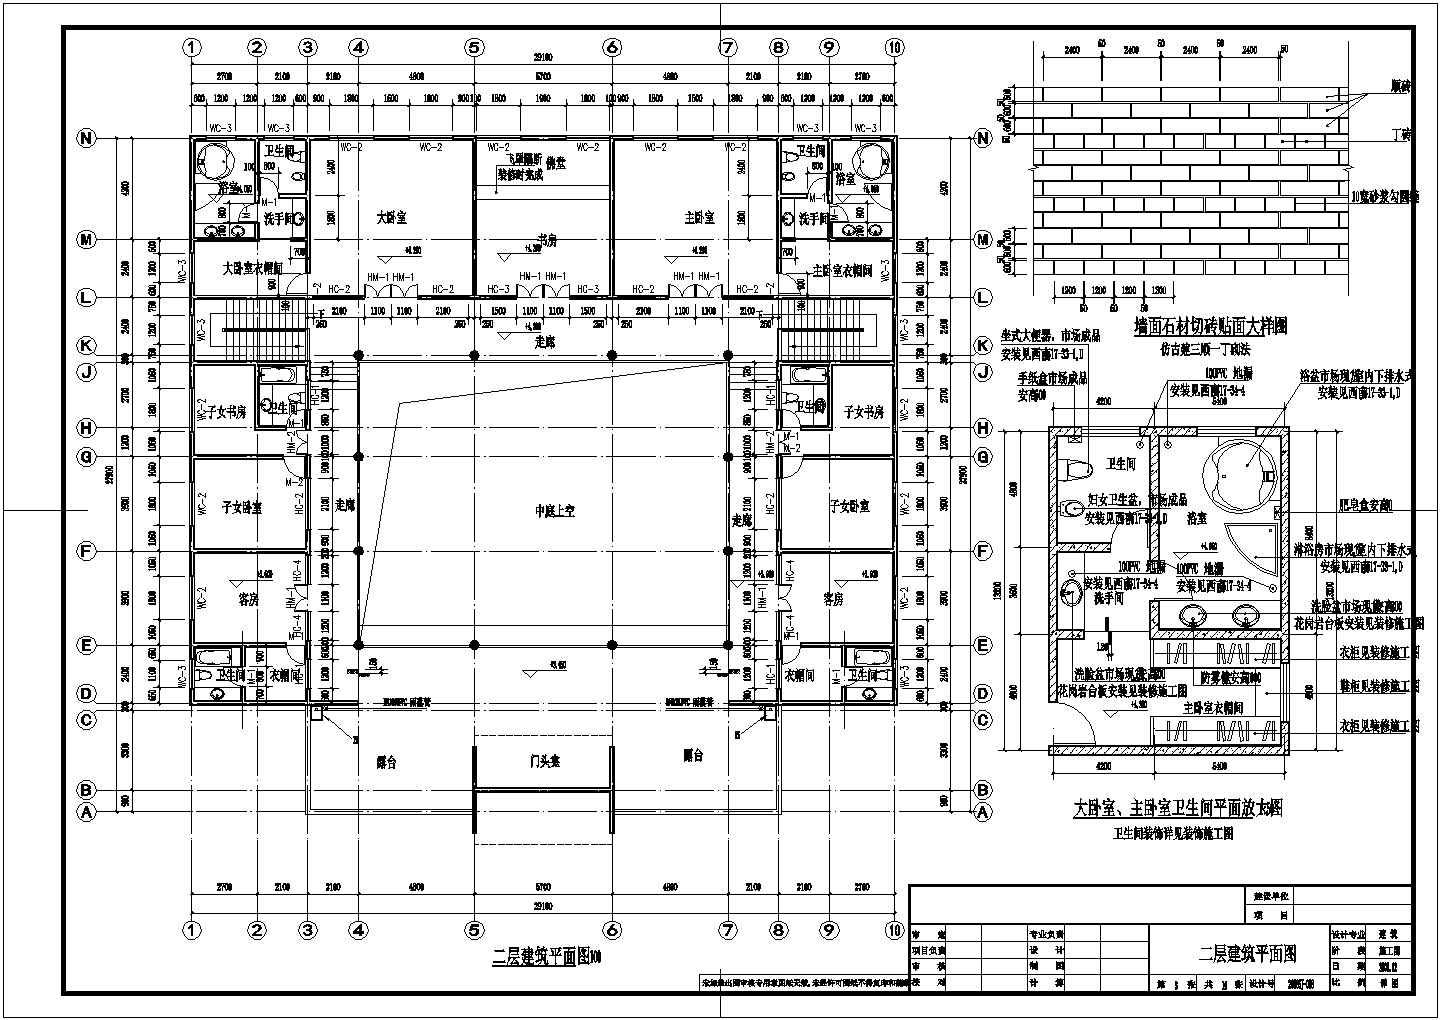 【扬州】某景区仿古四合院建筑设计施工图(带效果图)